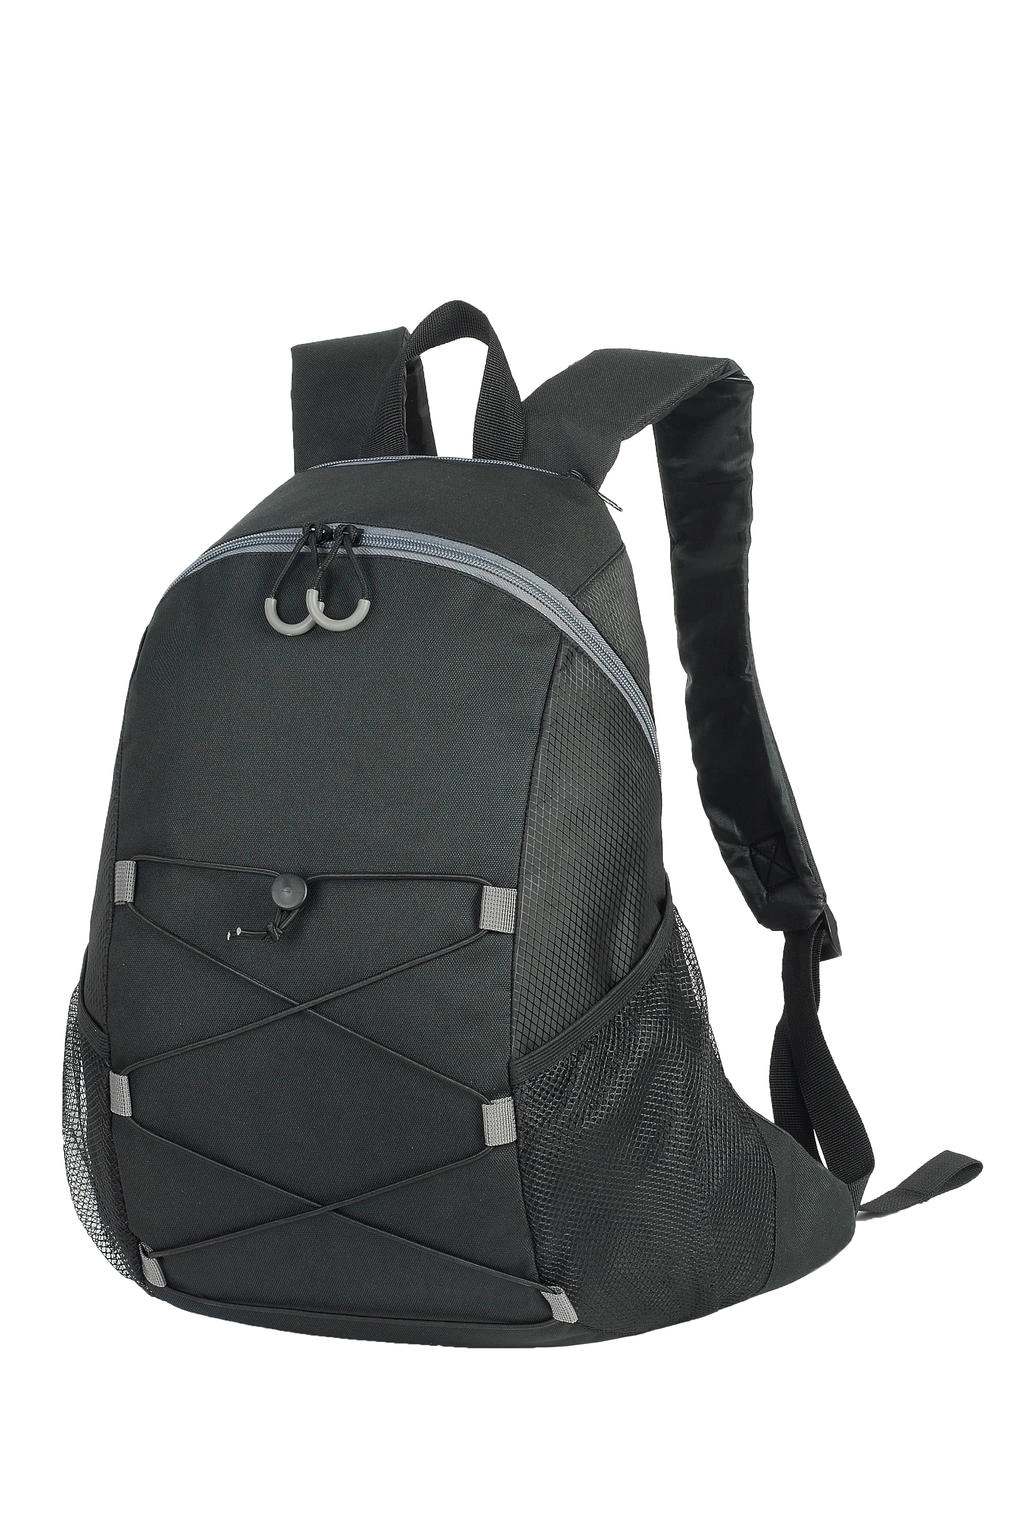 Chester Backpack zum Besticken und Bedrucken in der Farbe Black/Black mit Ihren Logo, Schriftzug oder Motiv.